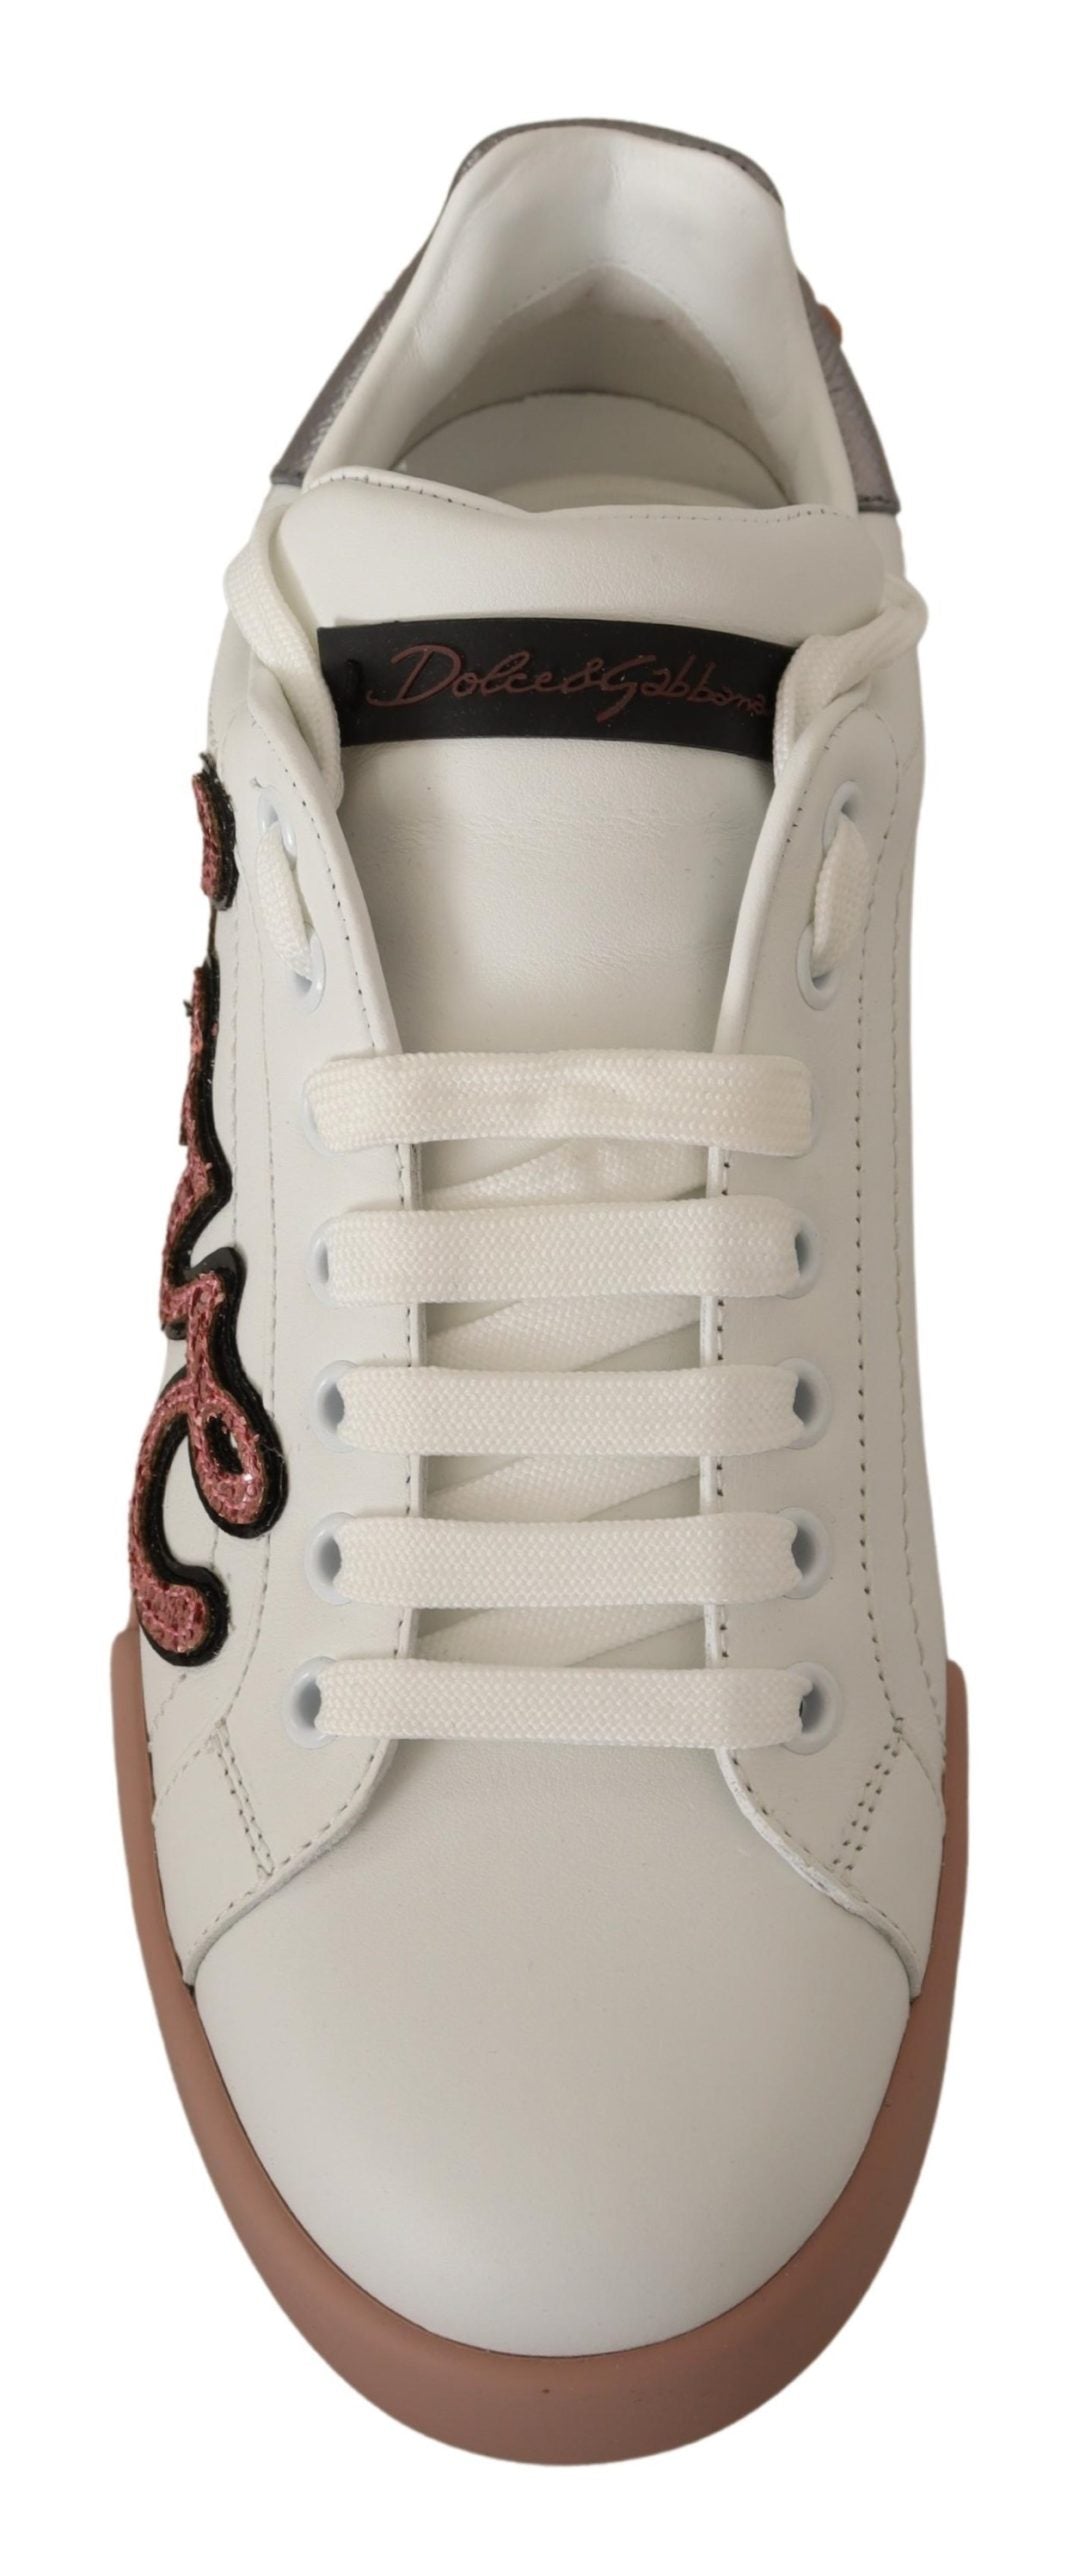 White Love Patch Portofino Sneakers Shoes